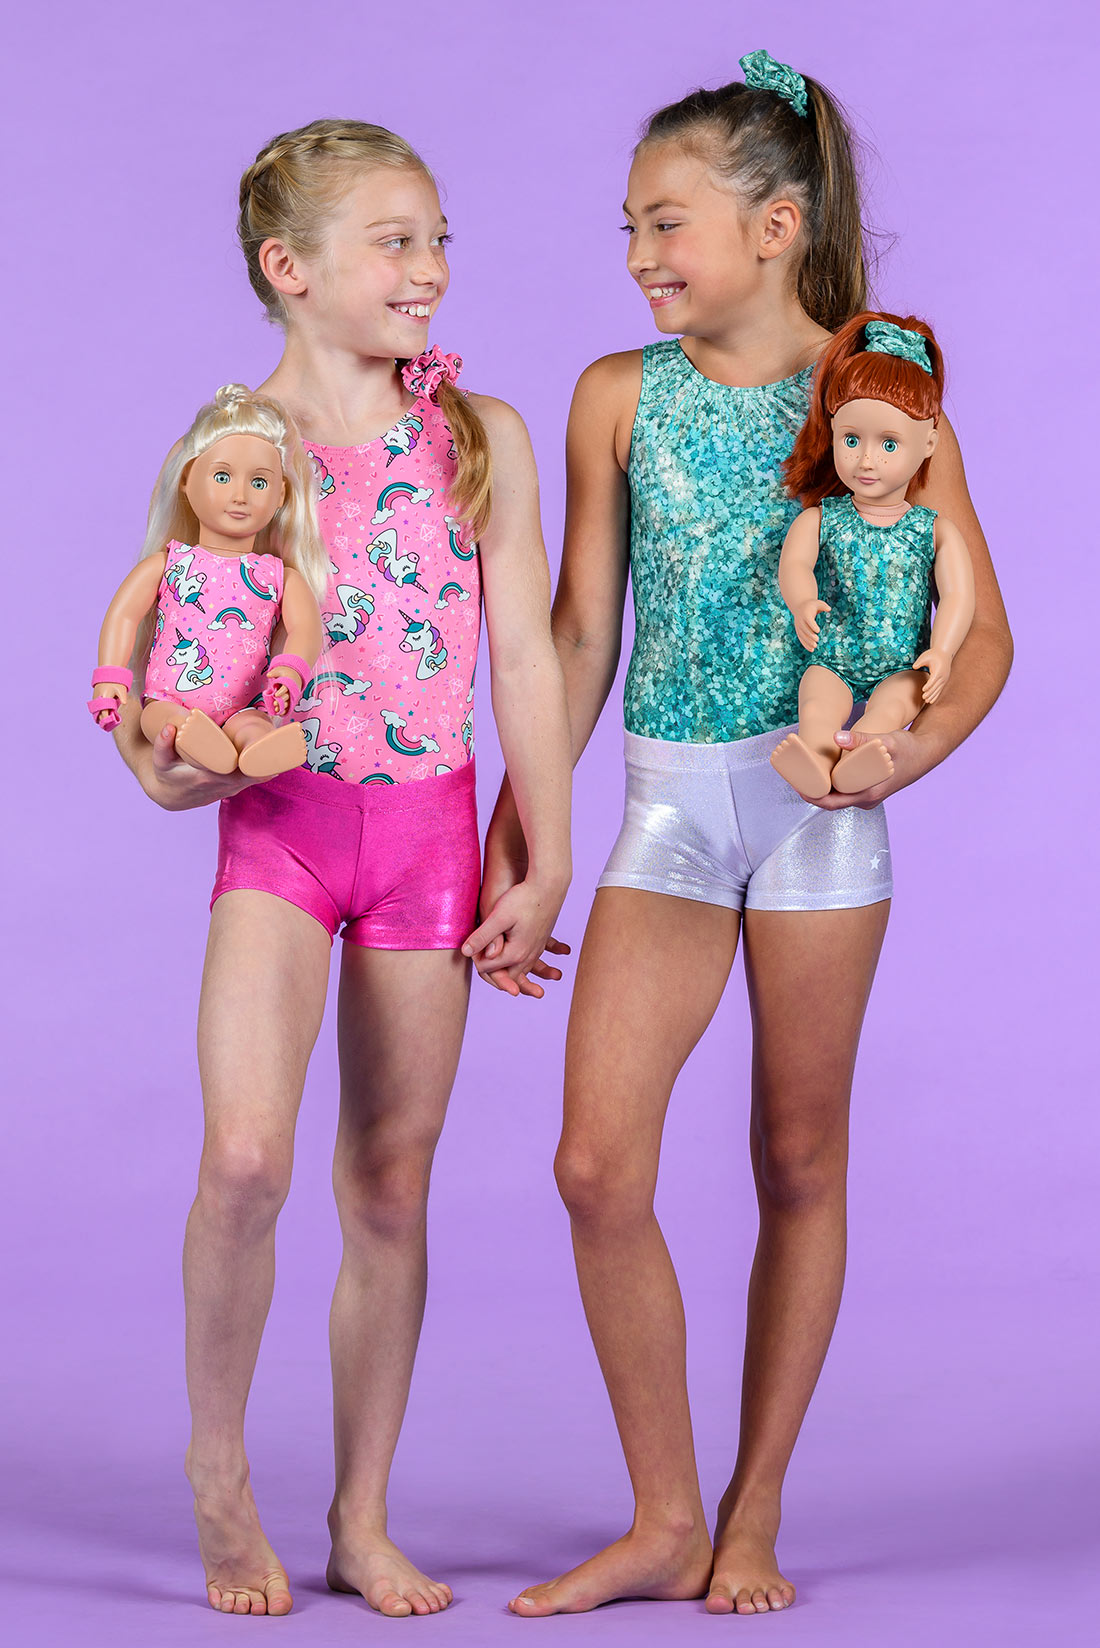 Colorful gymnastics outfits for kids, Destira, 2023